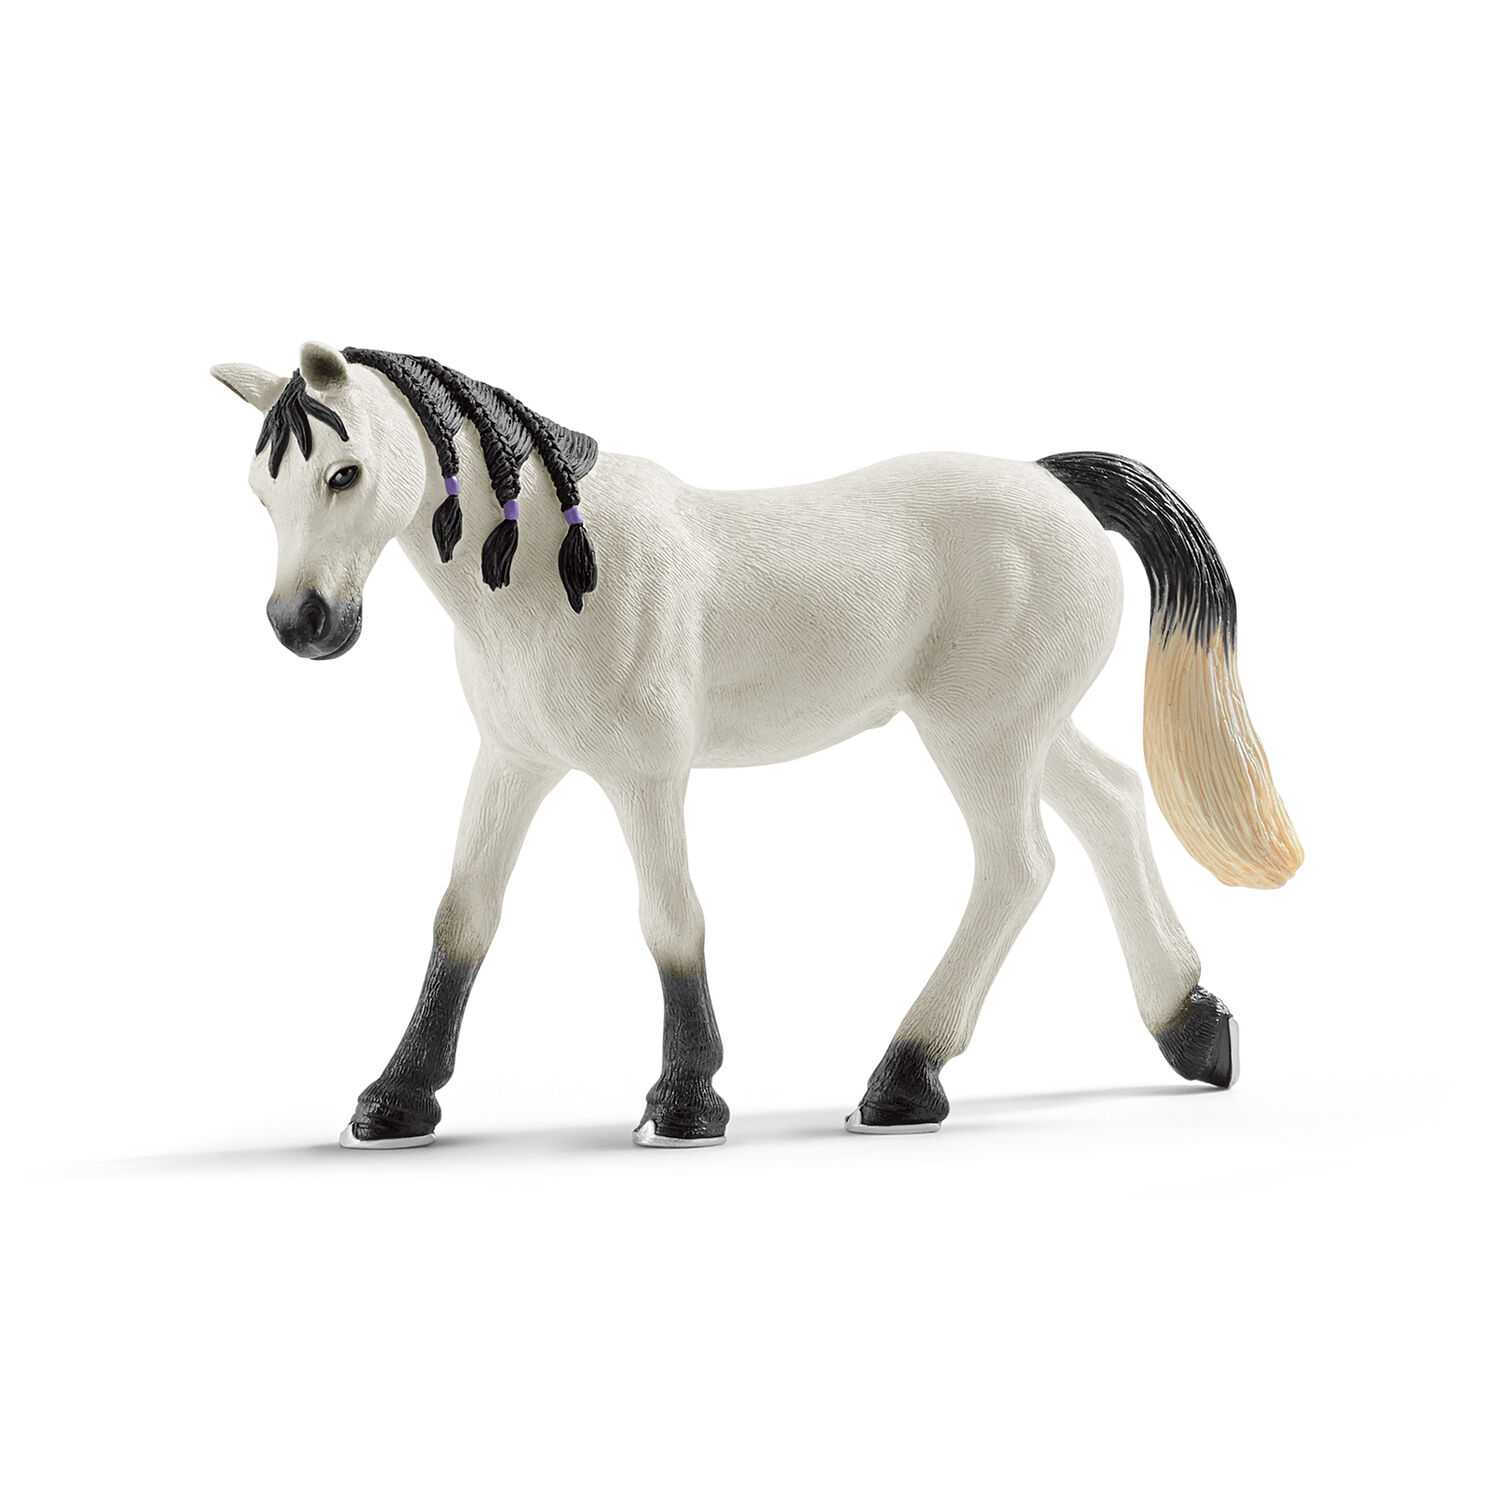 Schleich 13762 Arabian Foal Toy Figure for sale online 